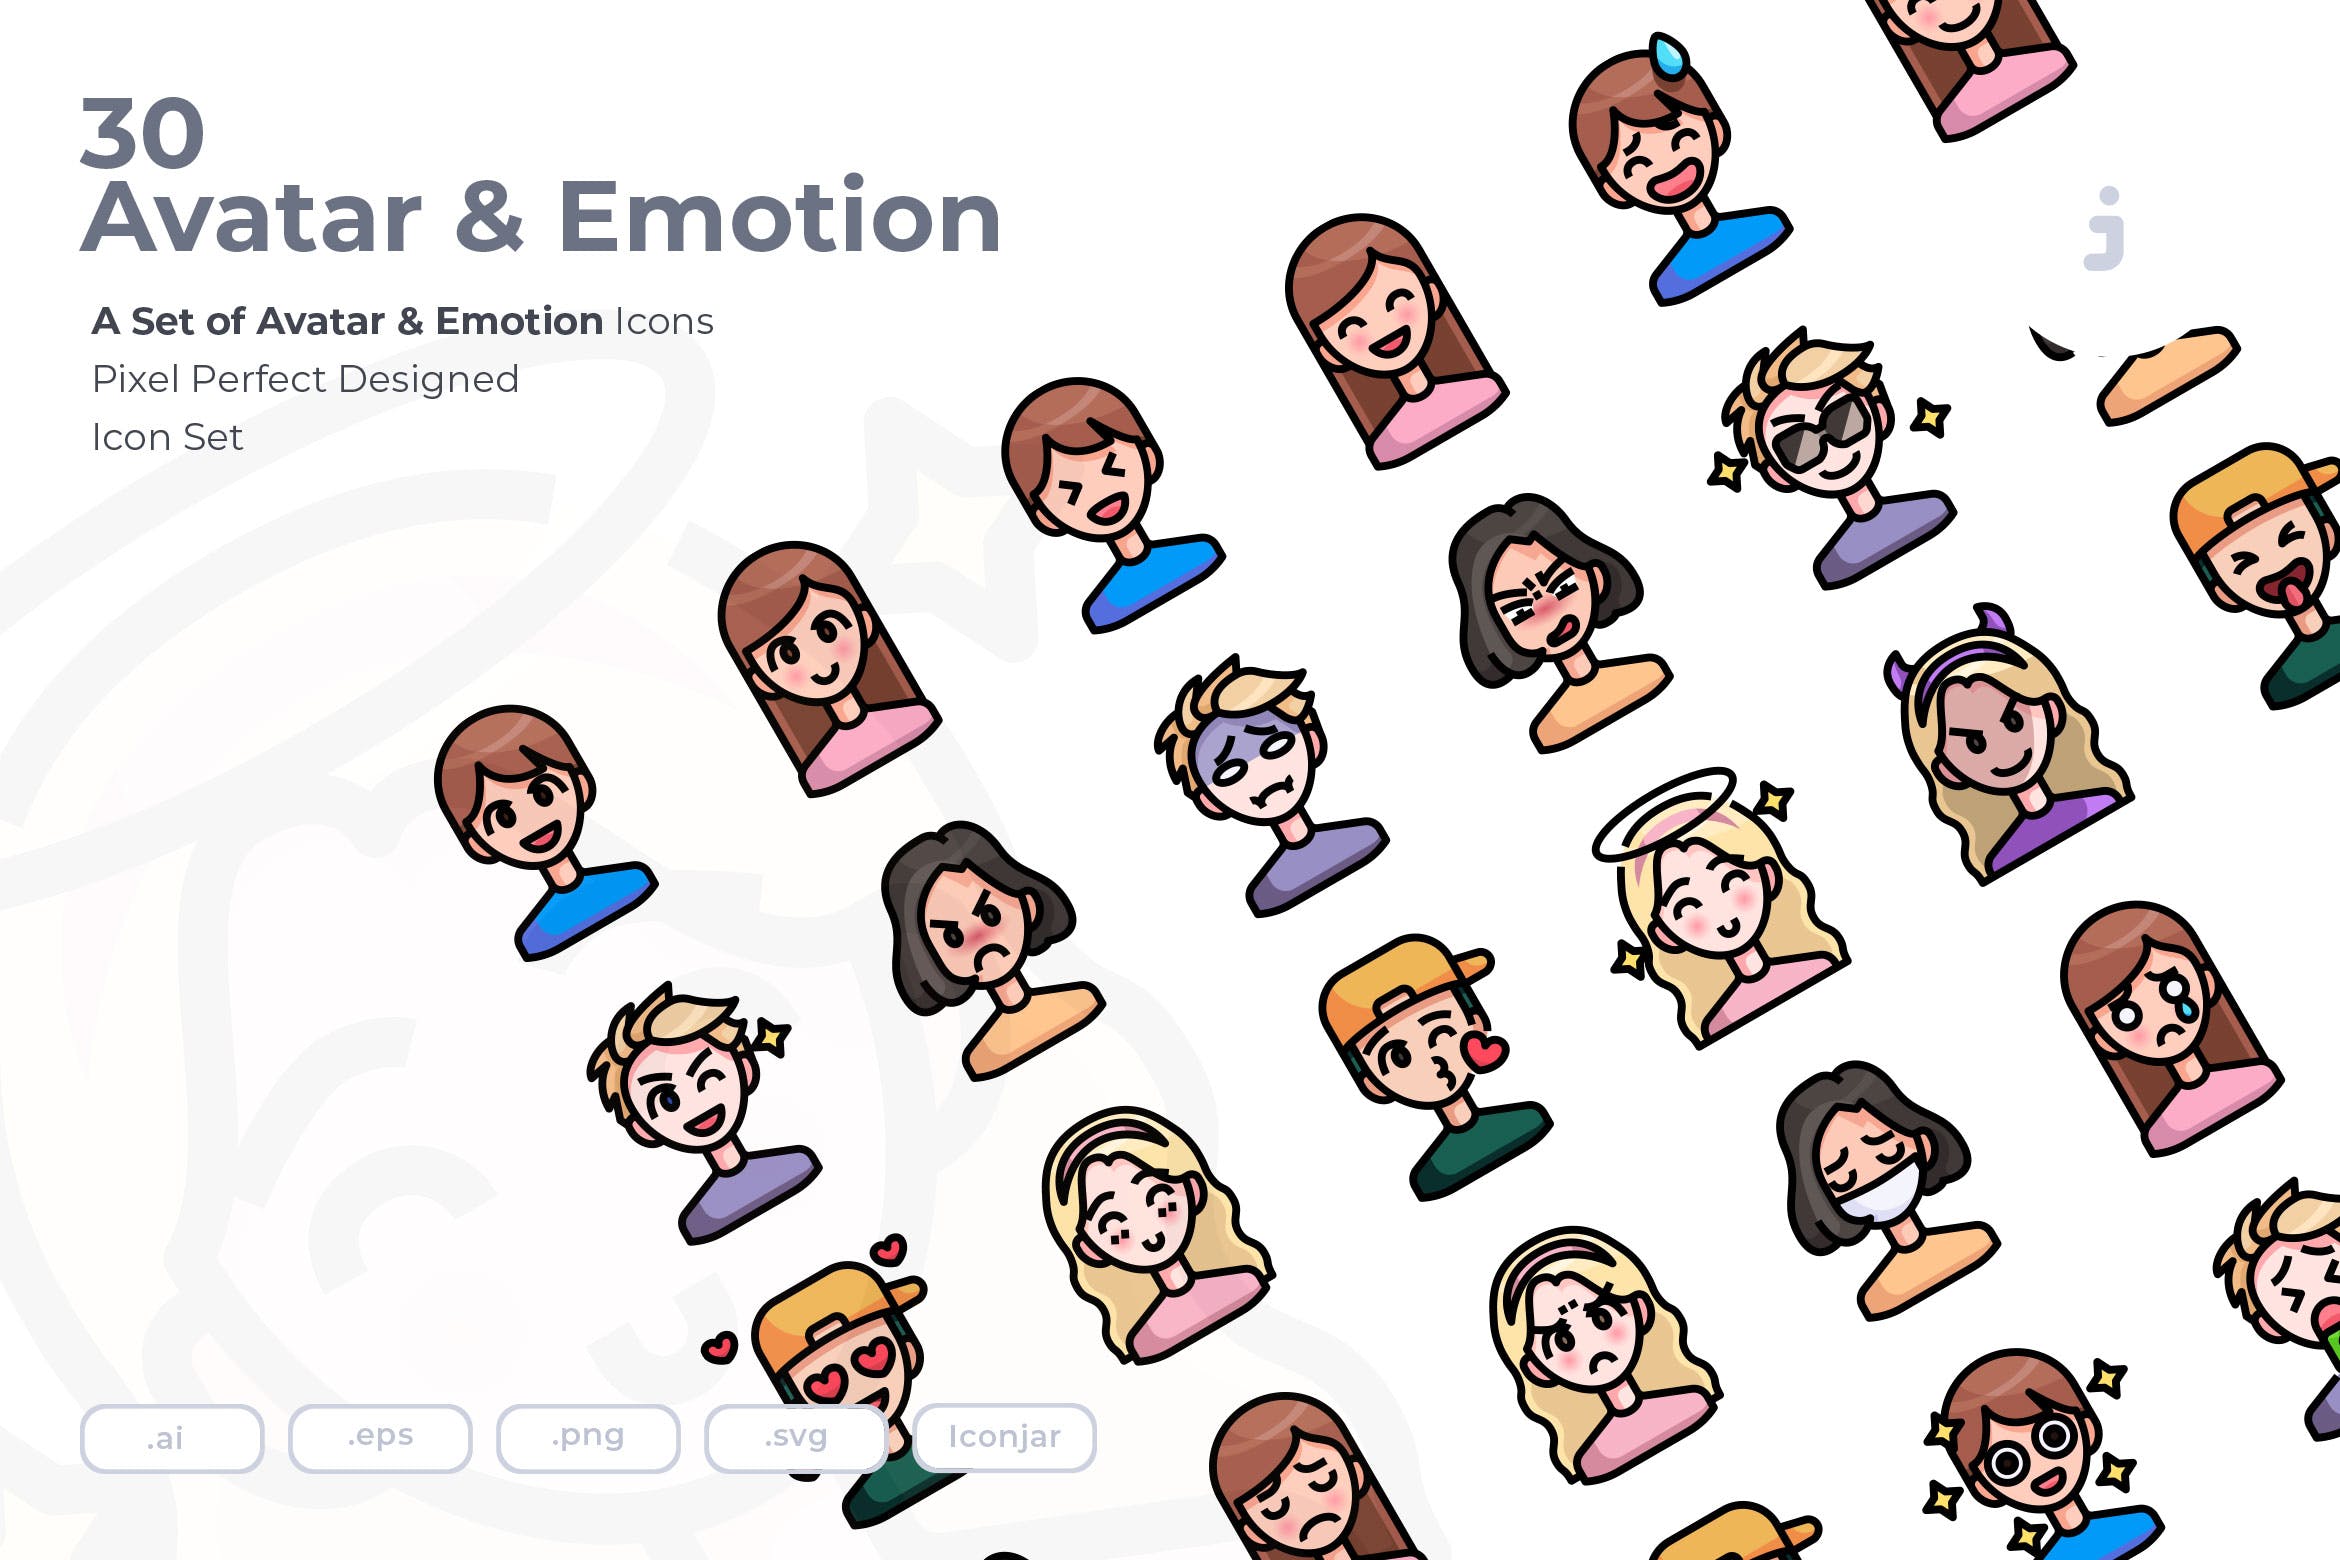 30枚彩色人物头像&表情矢量第一素材精选图标 30 Avatar and Emotion Icons插图